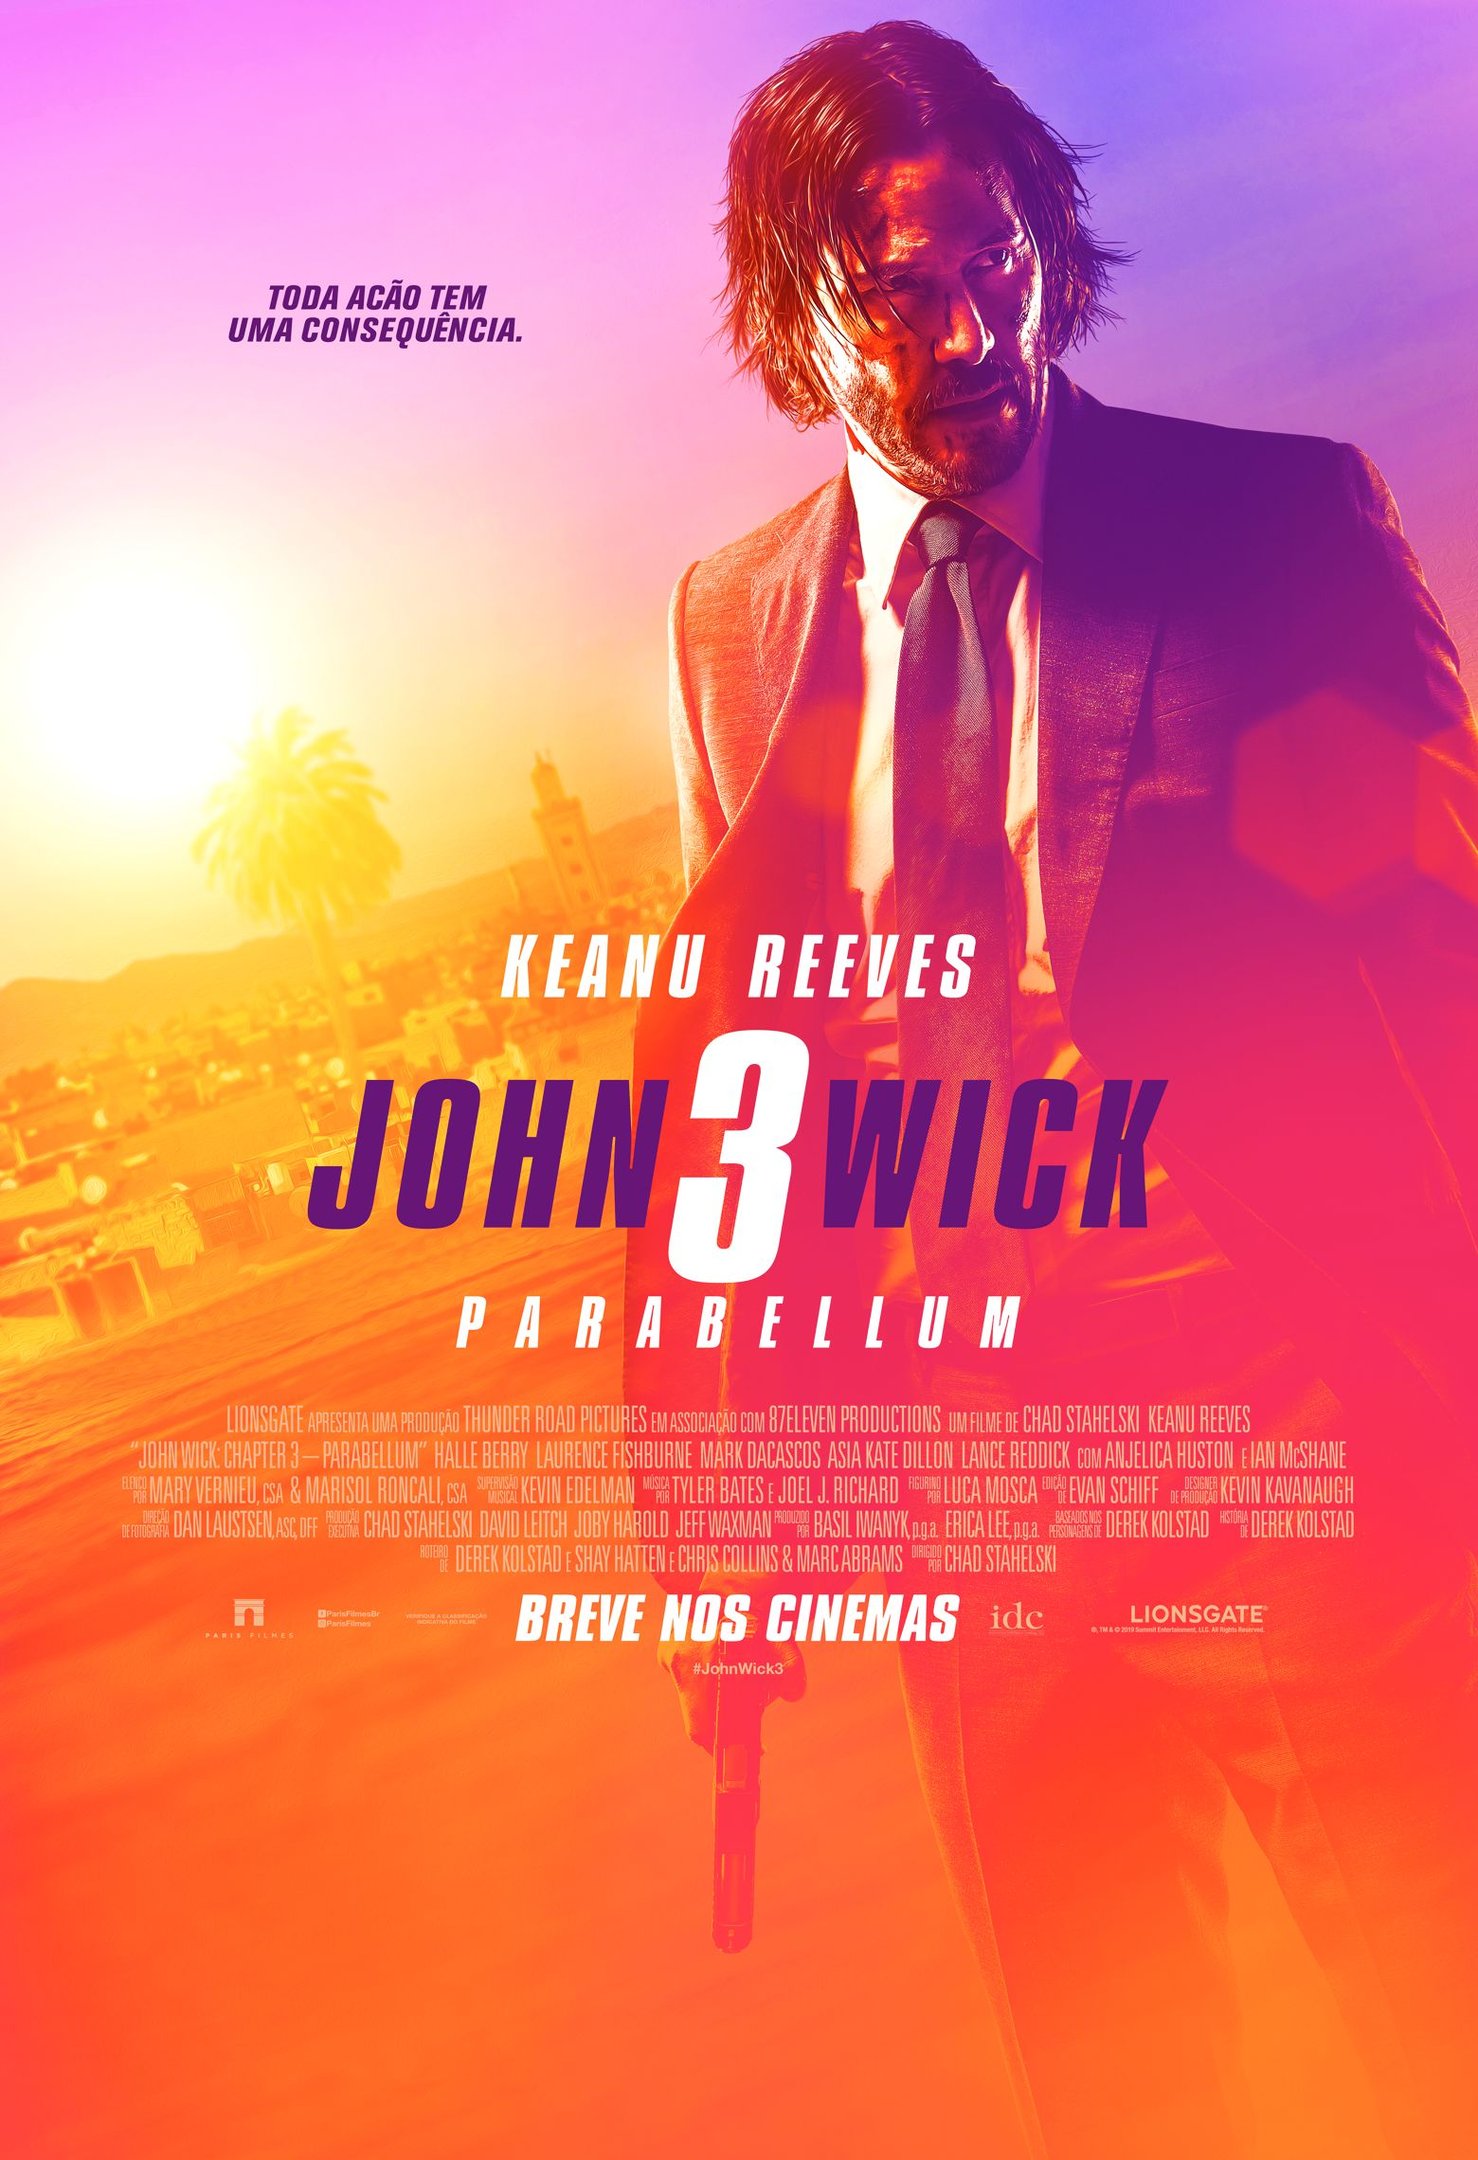 Causa da morte de Lance Reddick, de John Wick, é revelada - Cinema